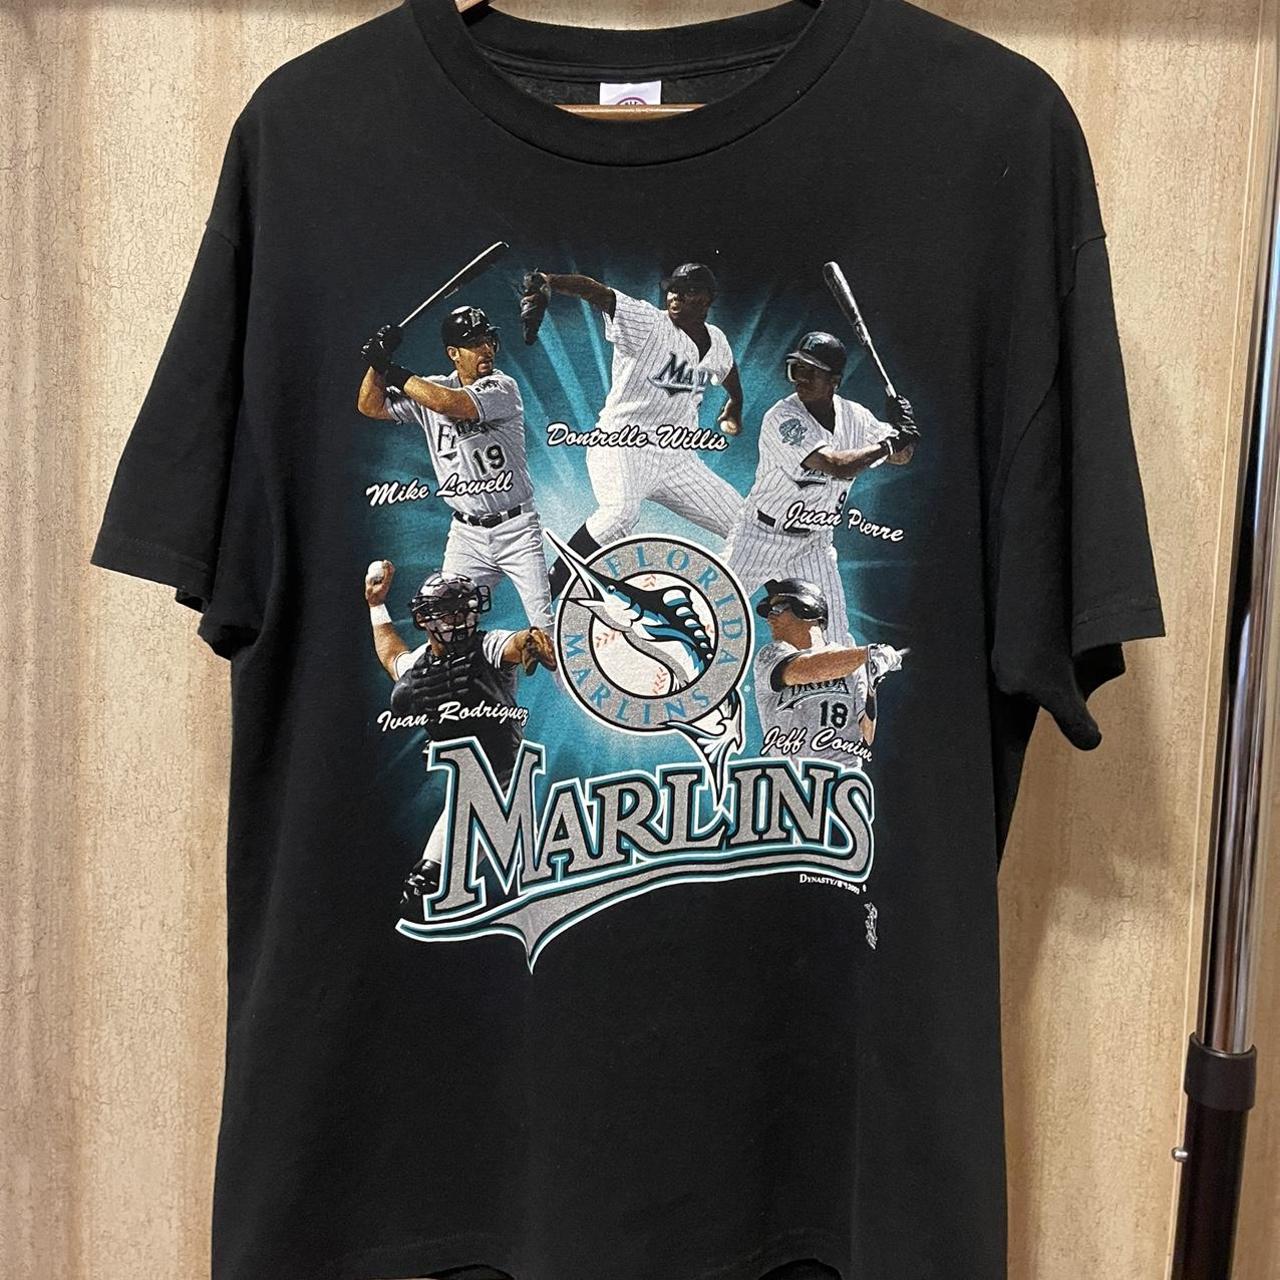 MLB Florida Marlins (Ivan Rodriguez) Men's T-Shirt.